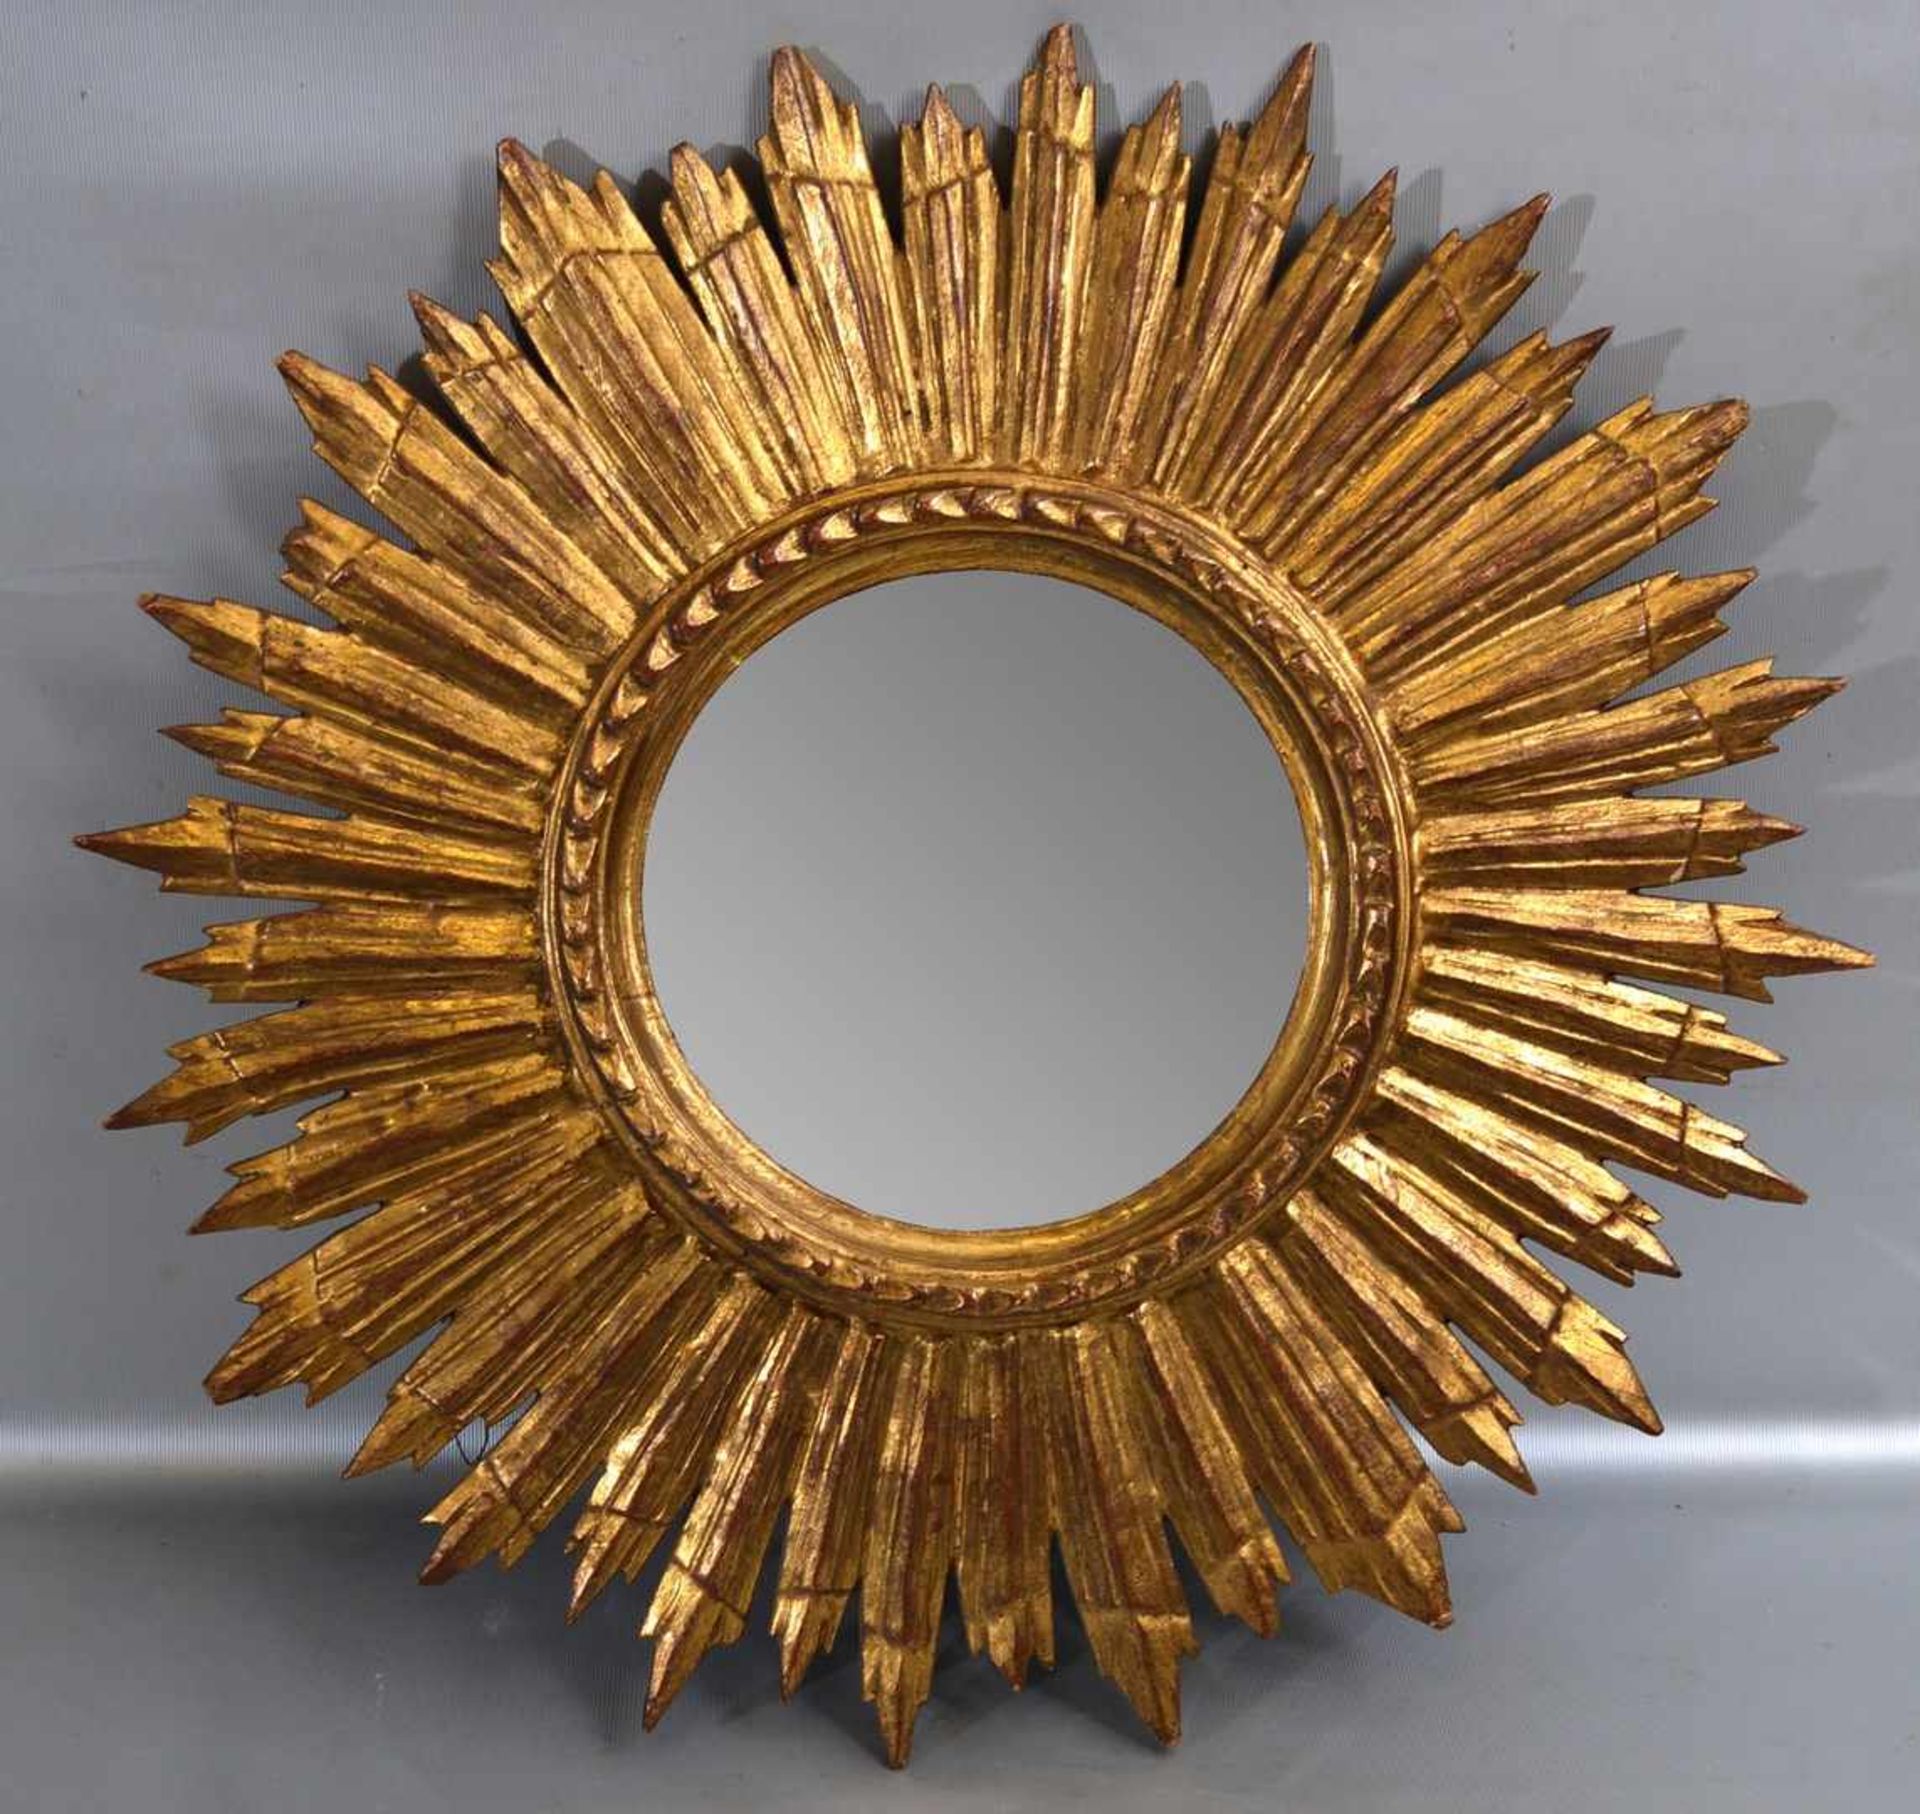 Spiegel Hartholz, geschnitzt, gold gefasst, rund, strahlenförmig, Dm 49 cm